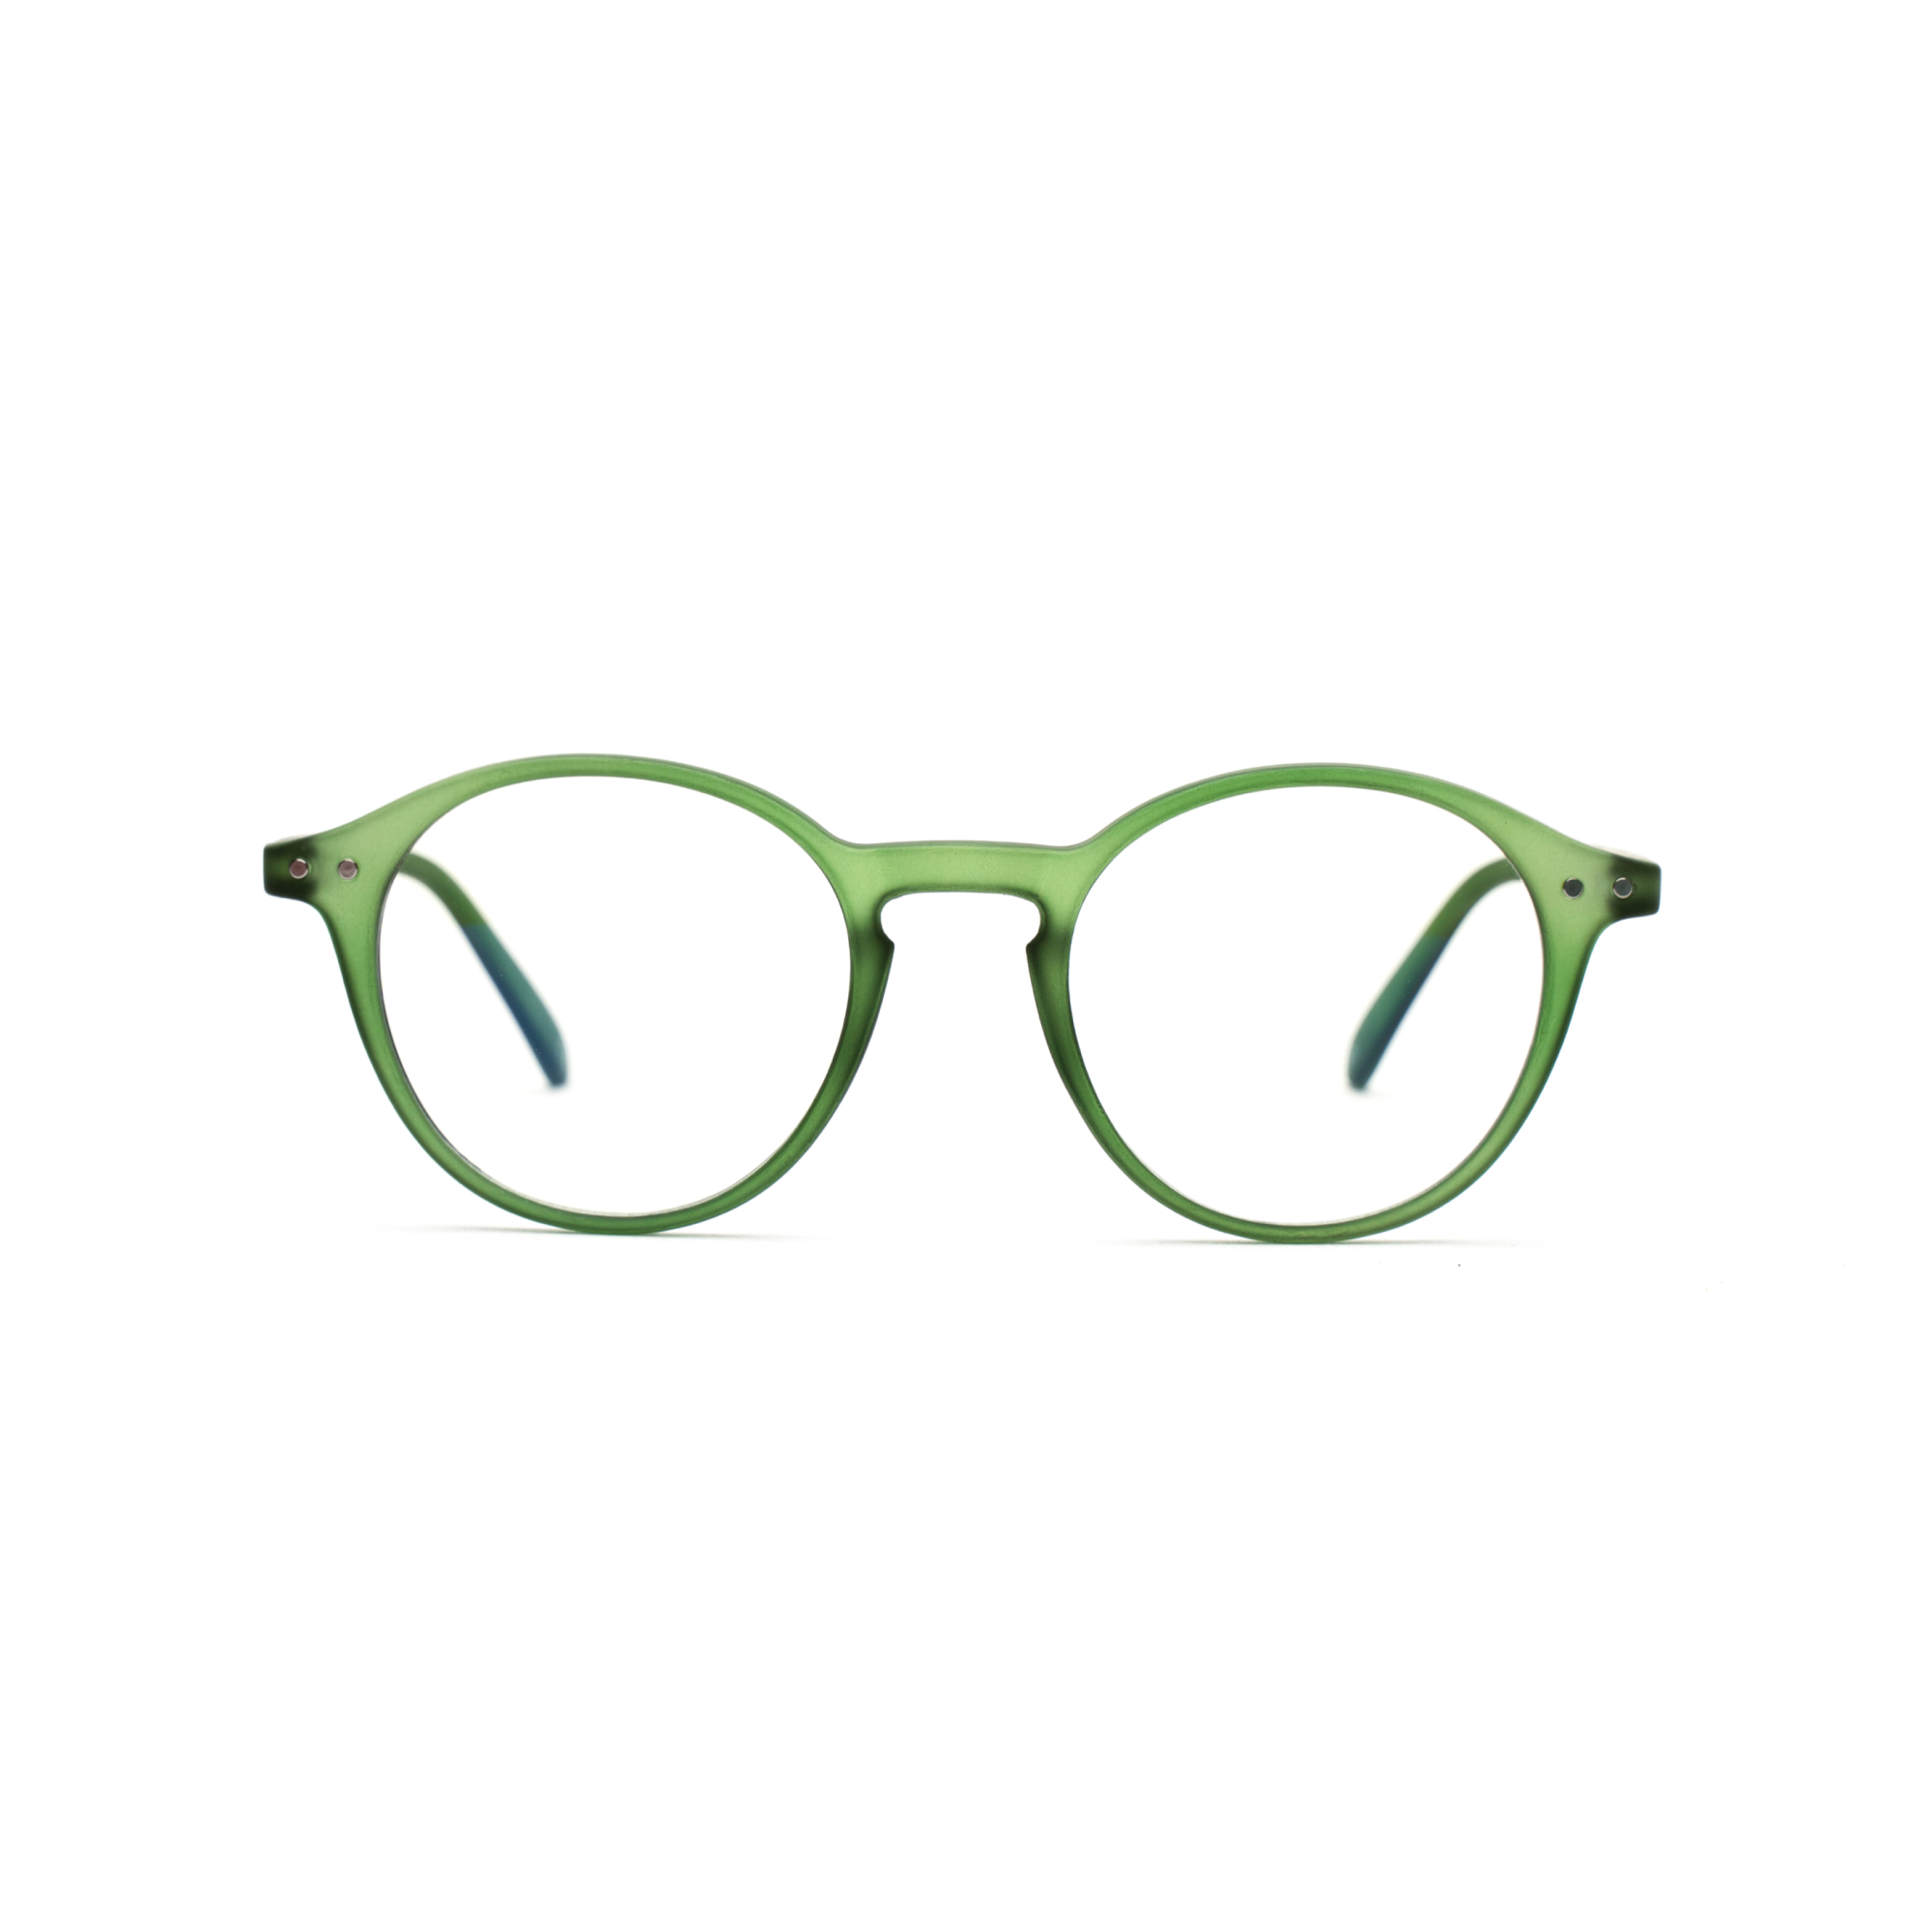 Men's reading glasses – Luca Ultimate m - Green